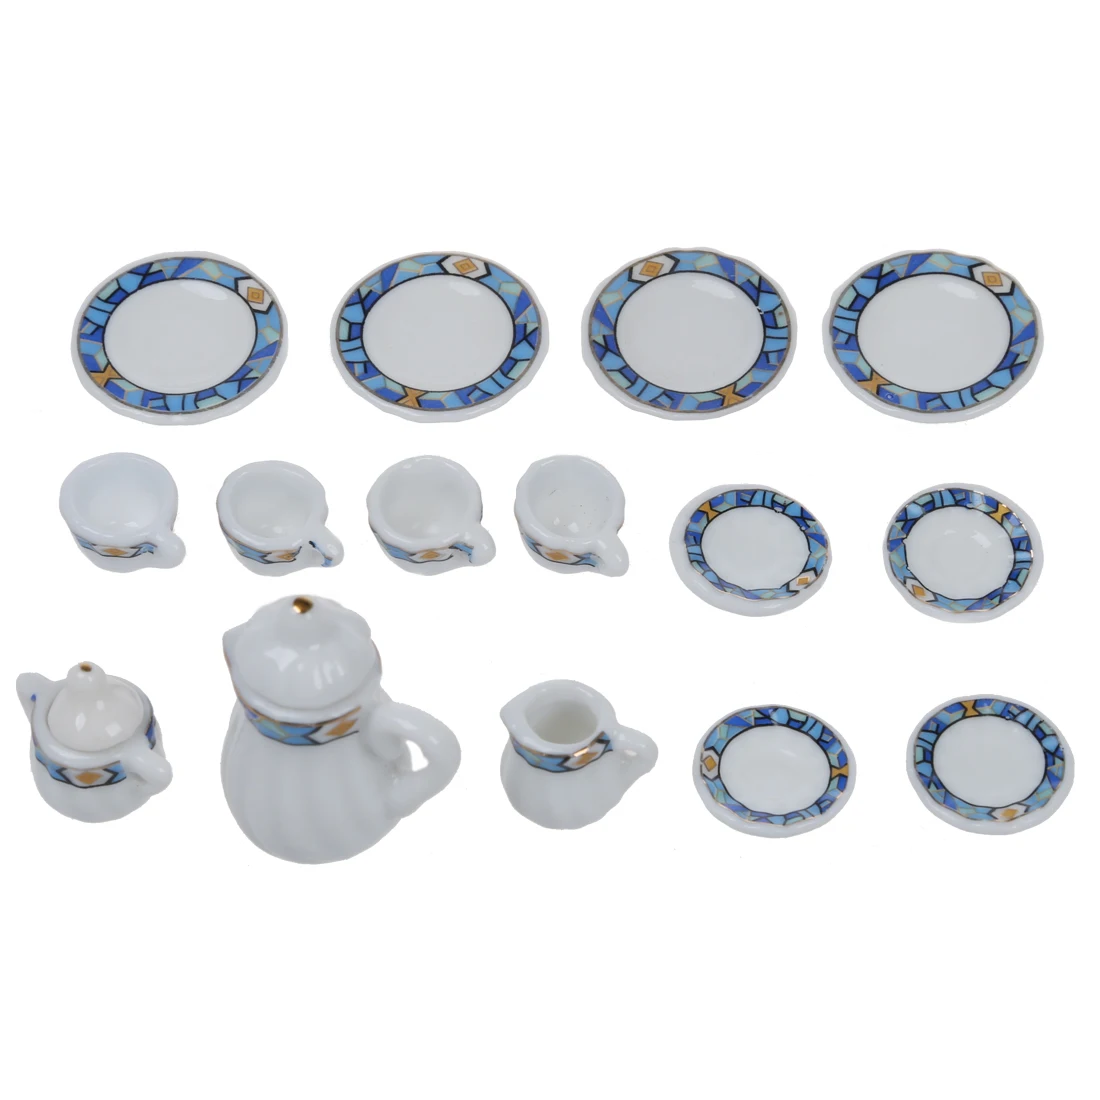 

ABWE Best Sale Set of 15pcs 1/12 Dollhouse Miniature Dining Ware Porcelain Tea Set ---White + Blue Puzzle